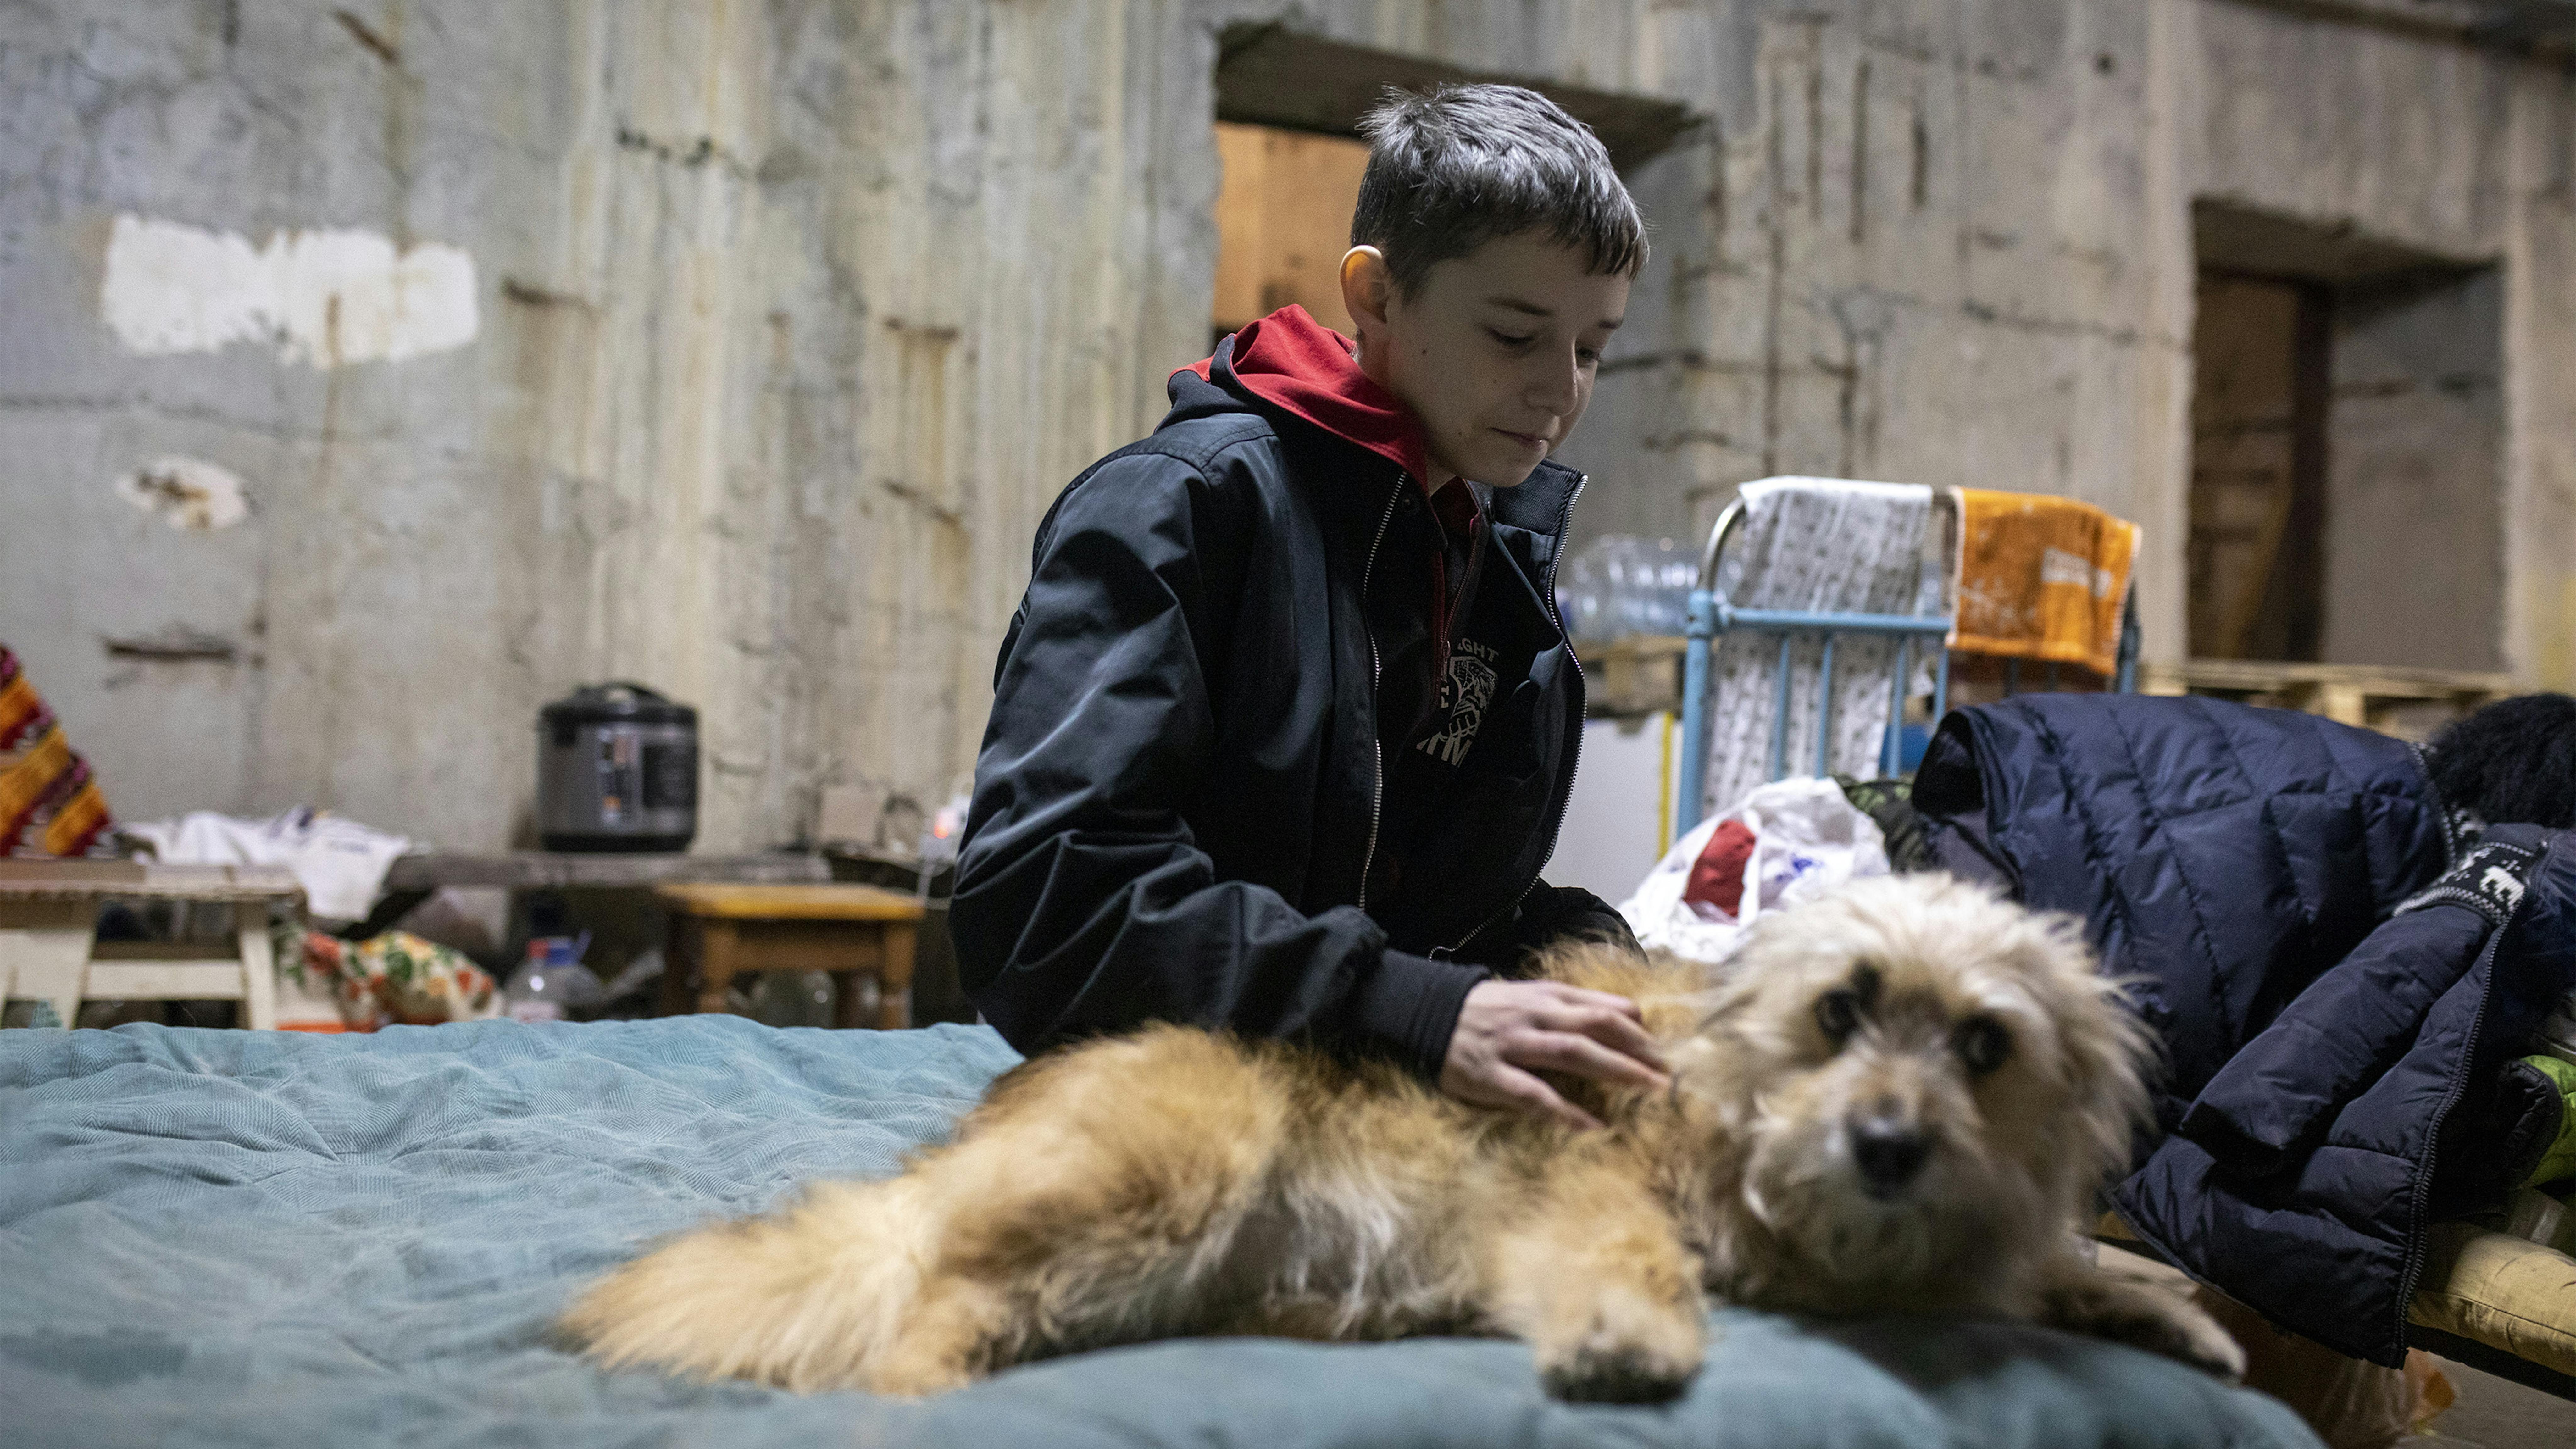 Un ragazzo gioca con un cane nel parcheggio sotterraneo che funge da rifugio antiaereo per le famiglie.